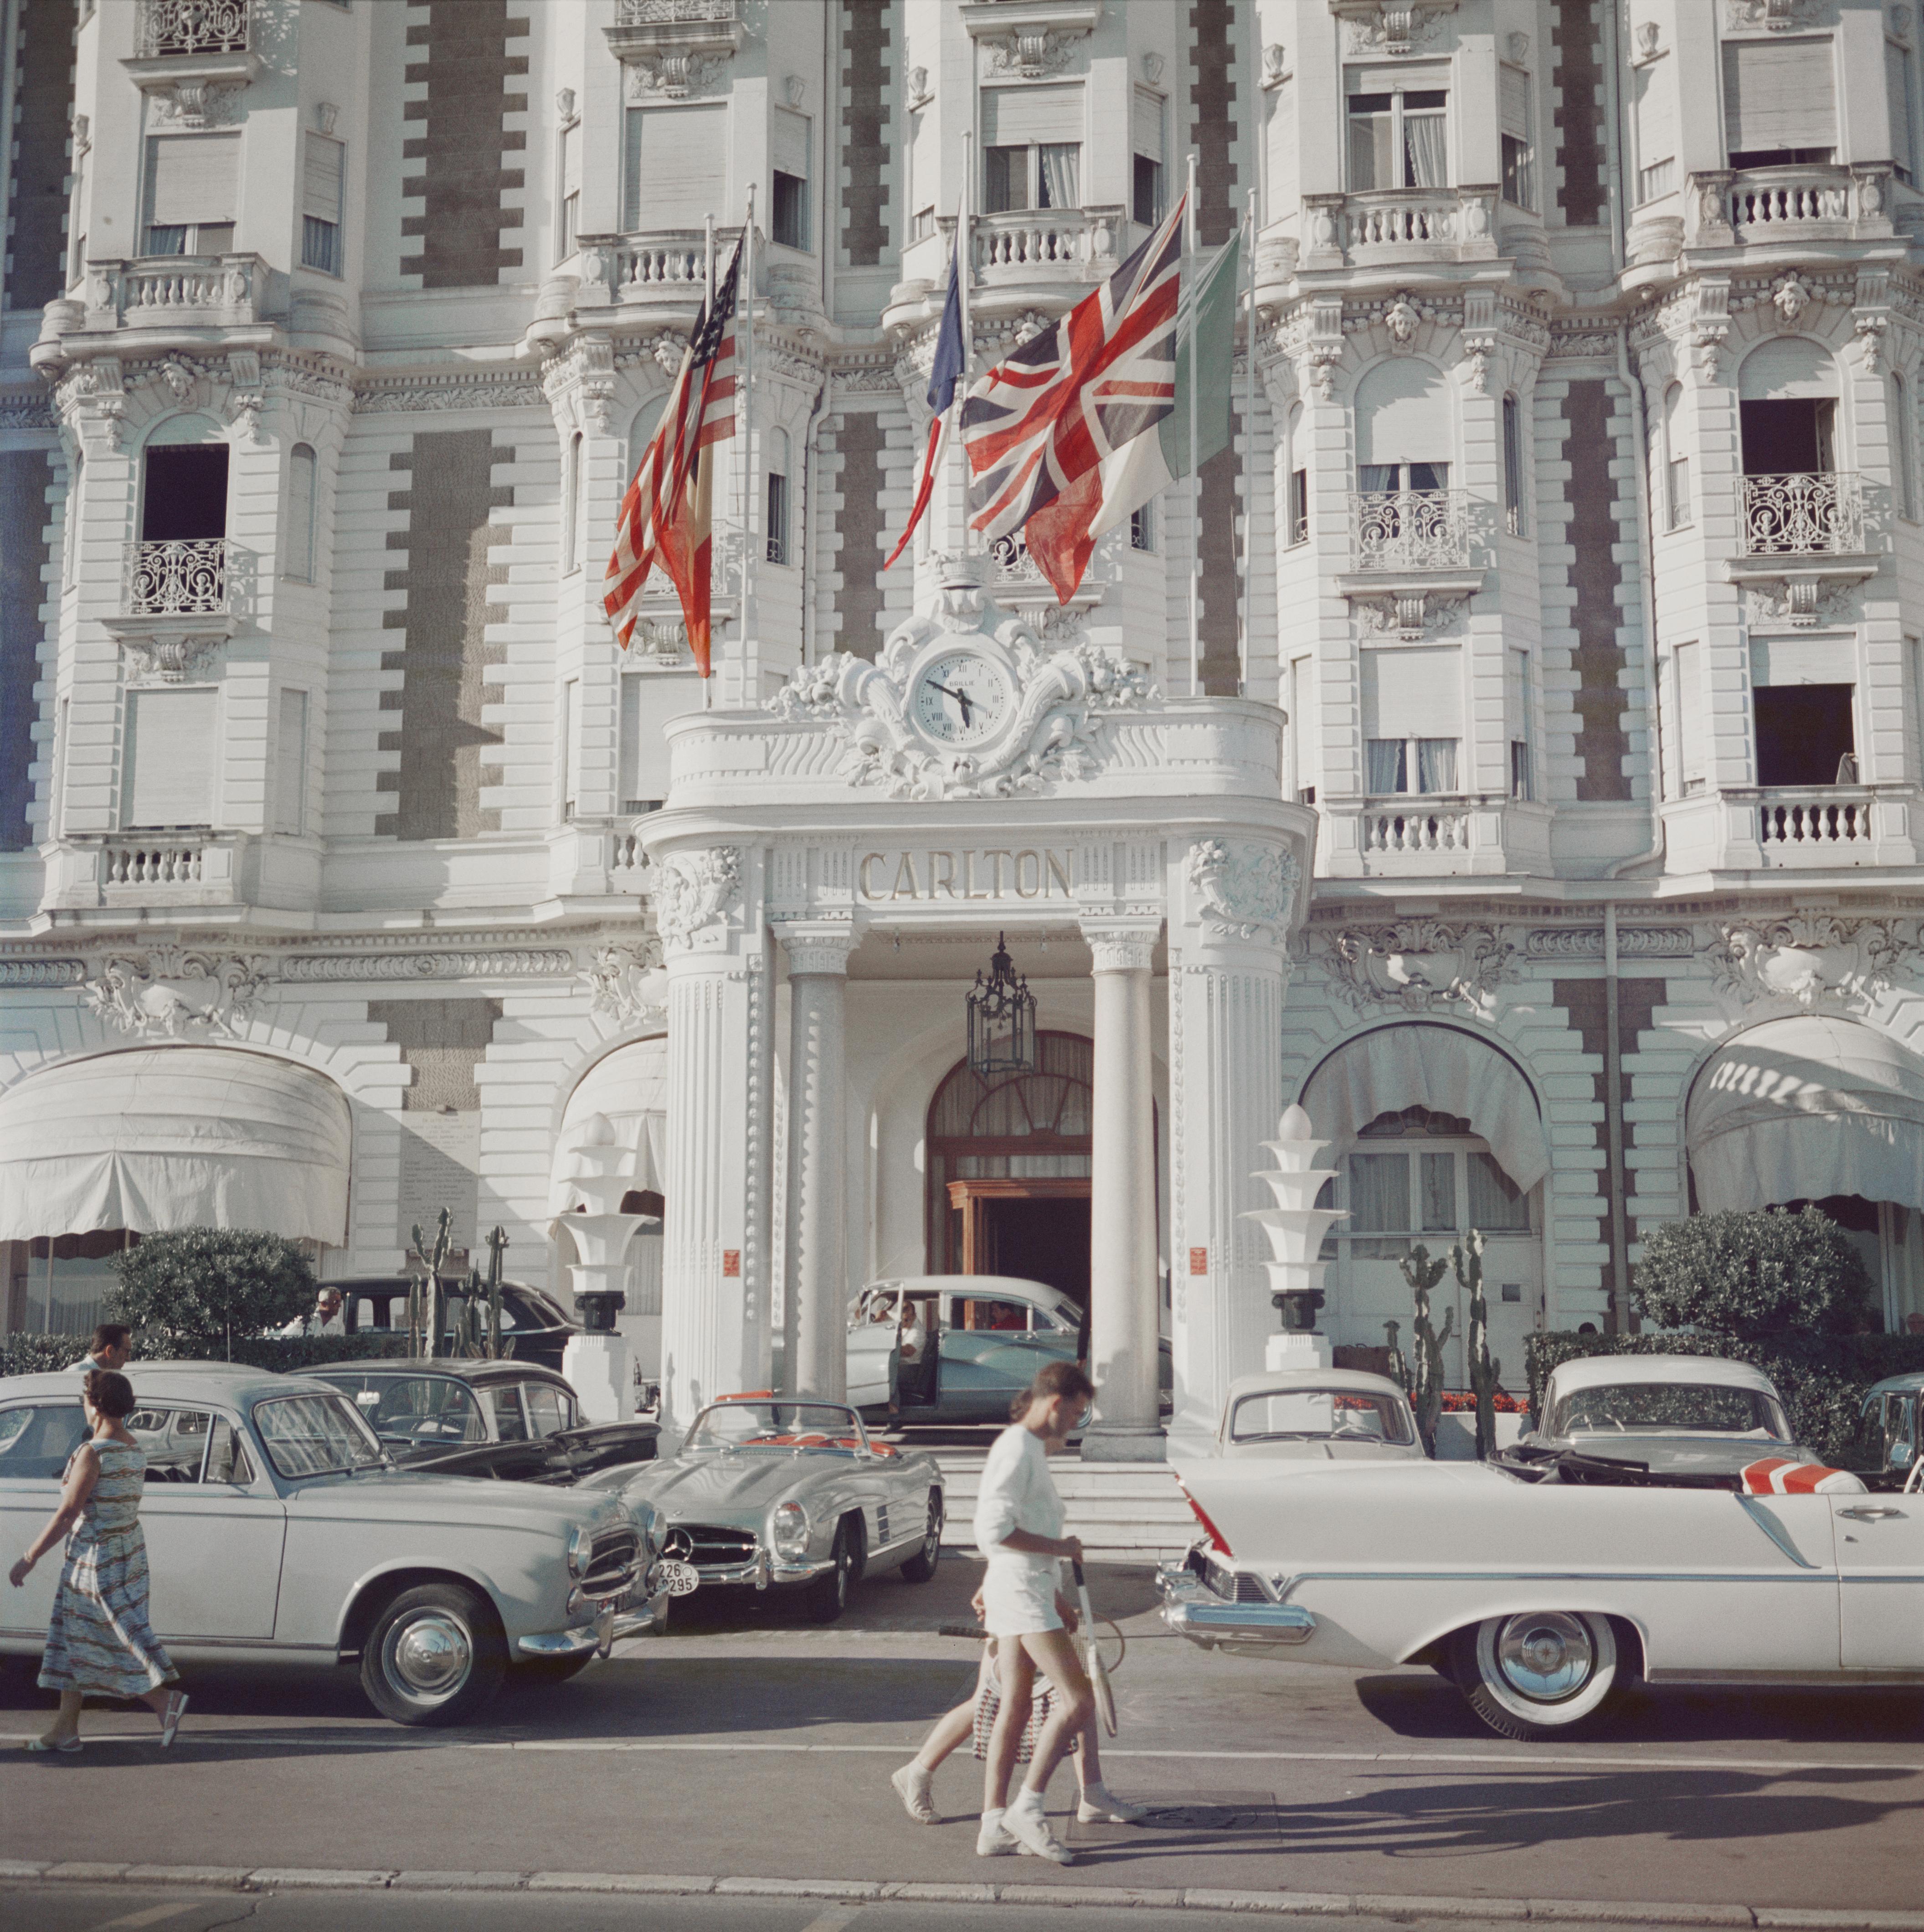 L'entrée de l'hôtel Carlton, Cannes, France, 1958, imprimé ultérieurement. 

Slim Aarons
Hôtel Carlton
Impression Lambda
Slim Aarons Estate Edition
Options d'encadrement disponibles

60 x 60 pouces
$5100

48 x 48 pouces
$4500

40 x 40